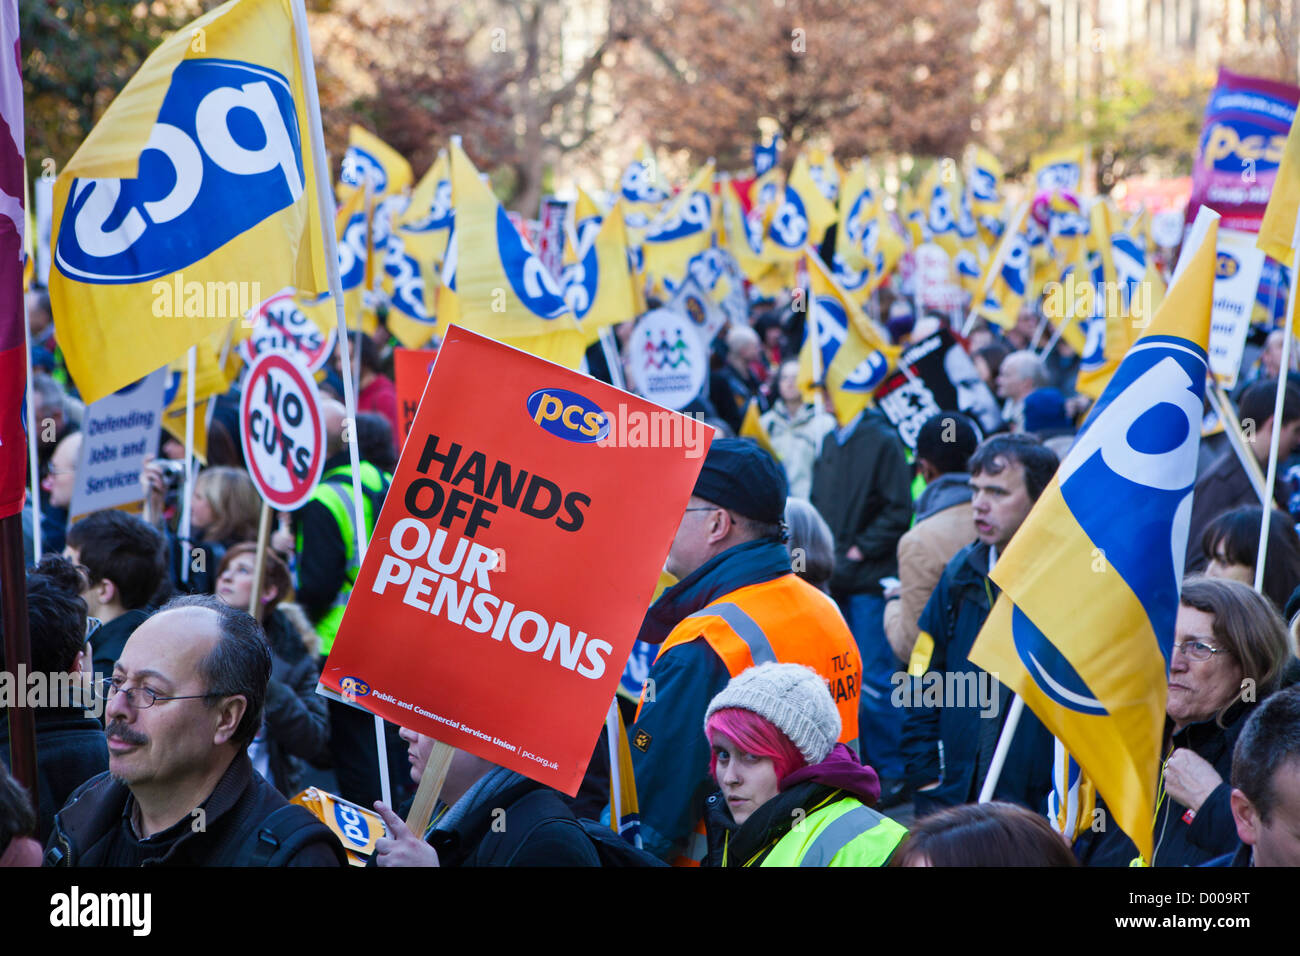 I lavoratori del settore pubblico da parte di tutti i sindacati hanno camminato fuori in sciopero oggi, 30 novembre 2011. Londra, Regno Unito. Foto Stock